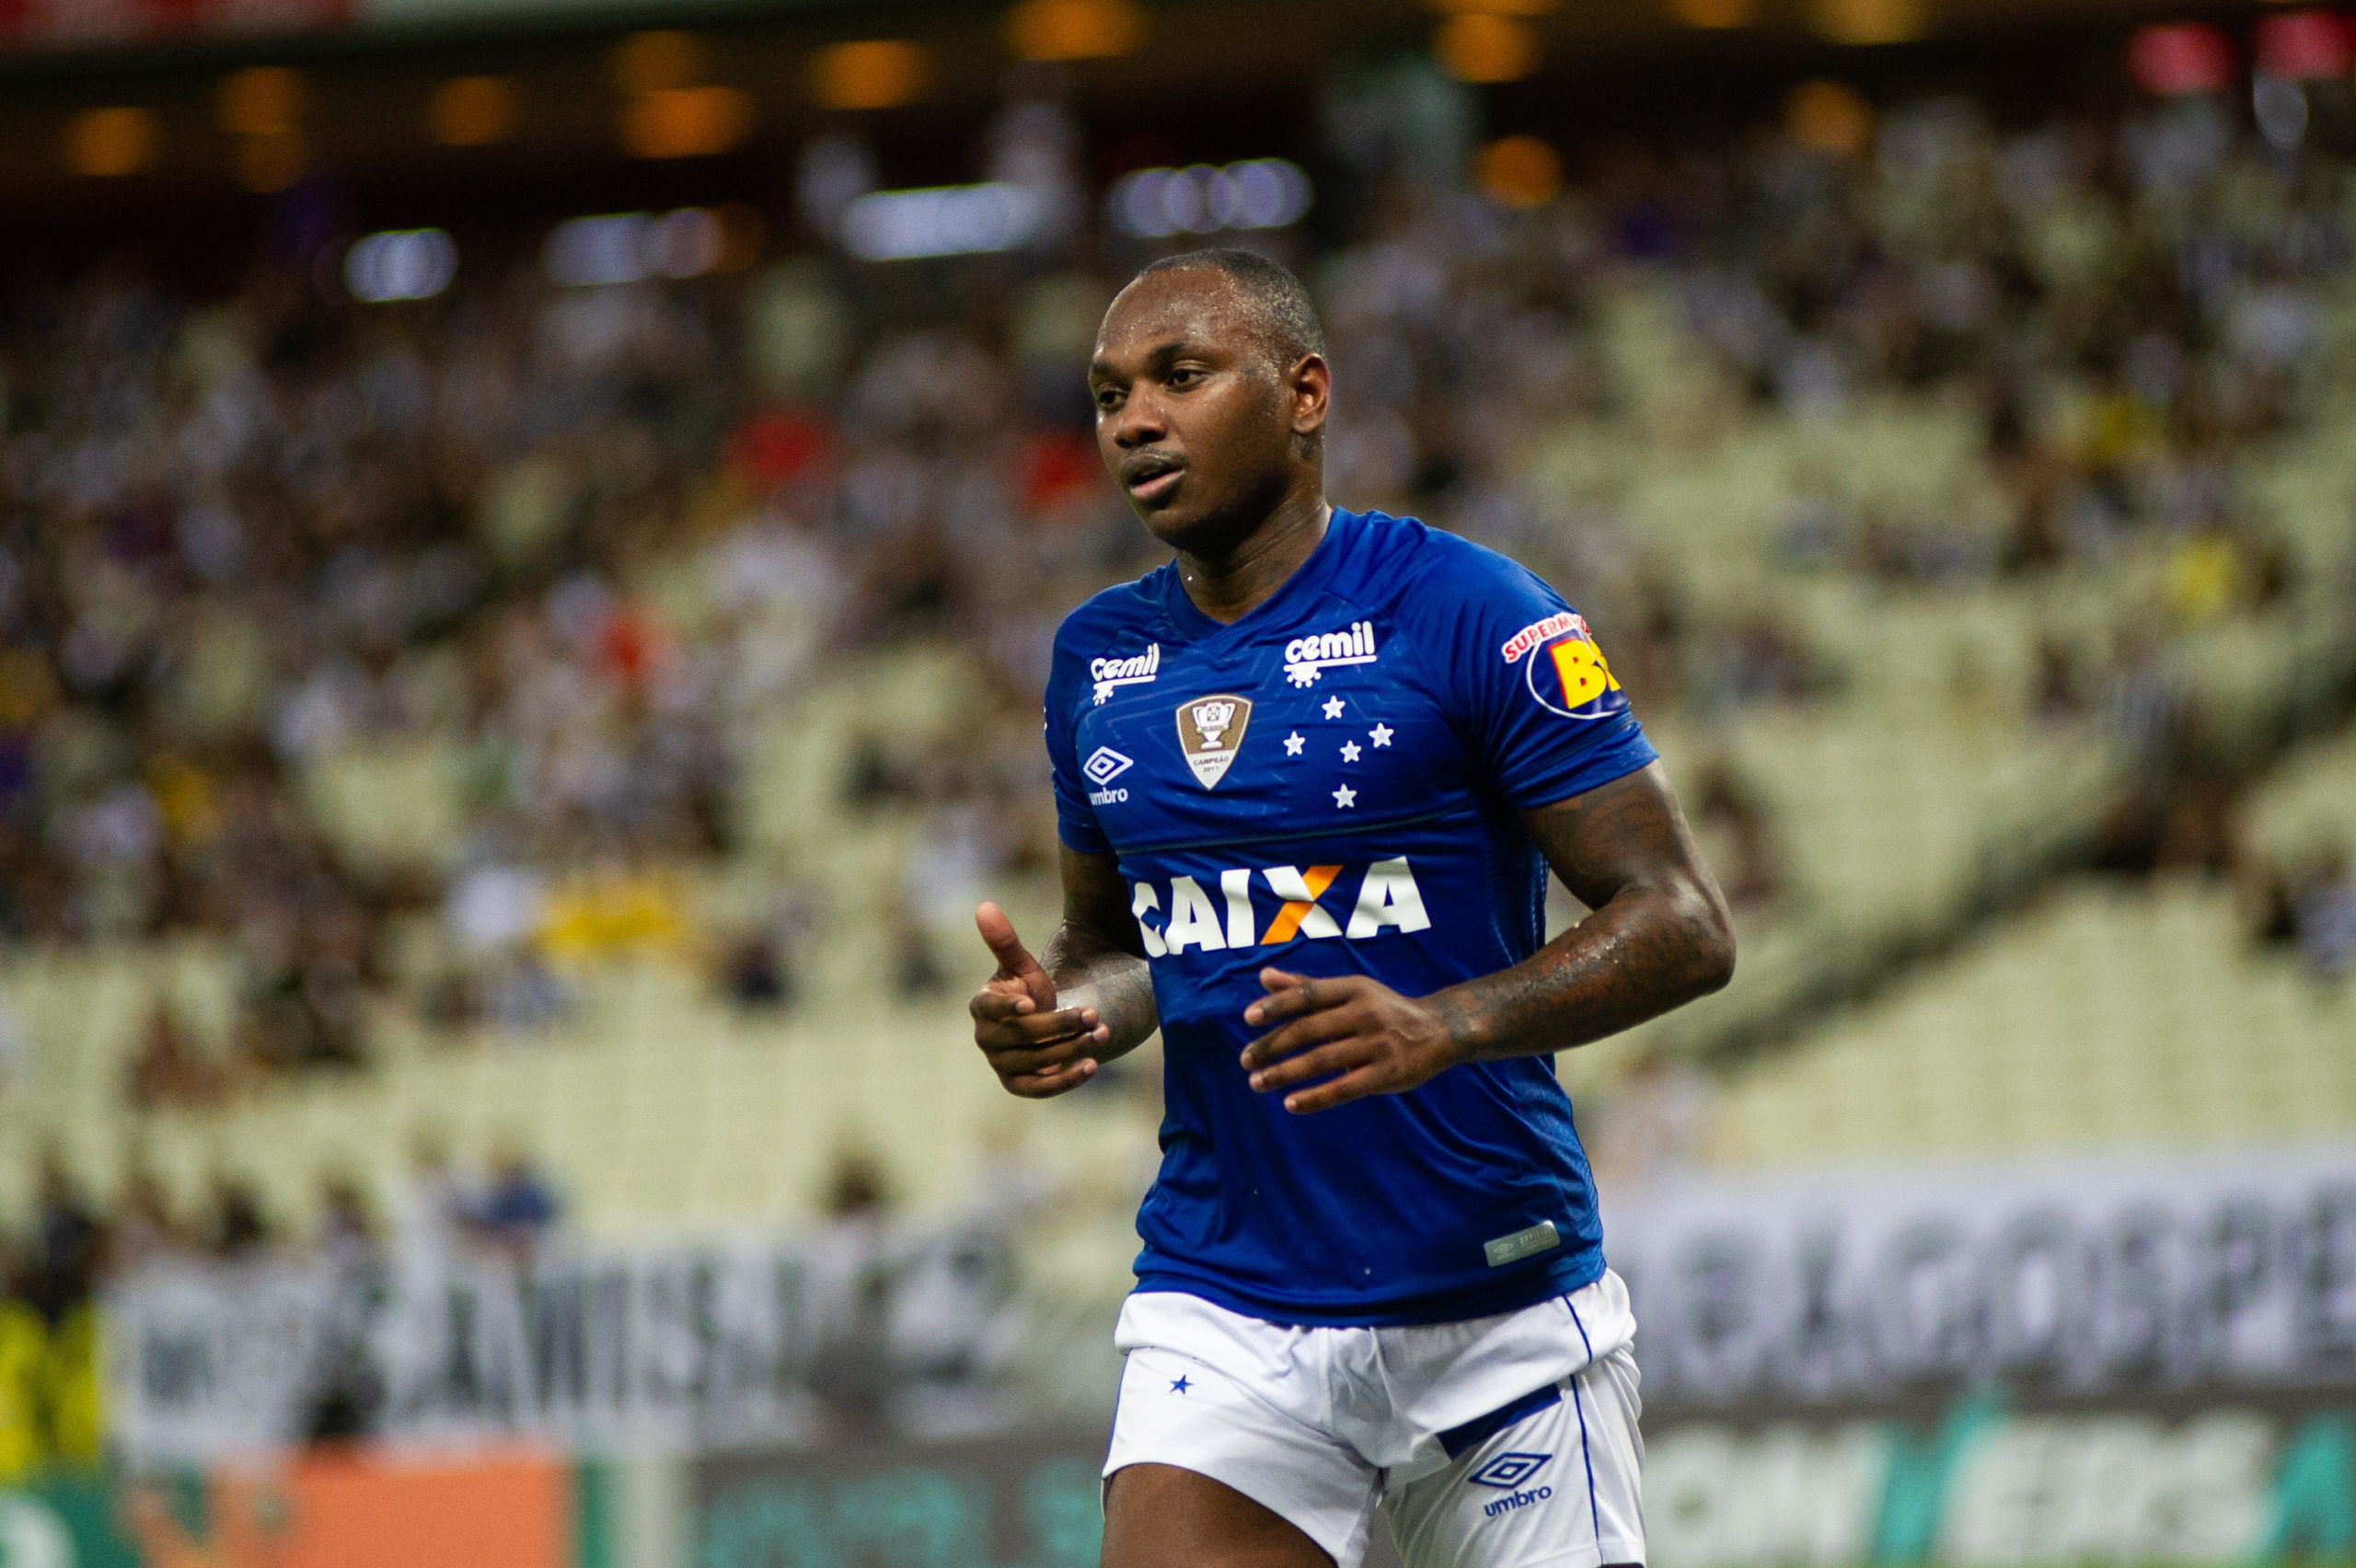 Sassá se recupera de lesão e volta para o futebol português; atacante não segue no Cruzeiro